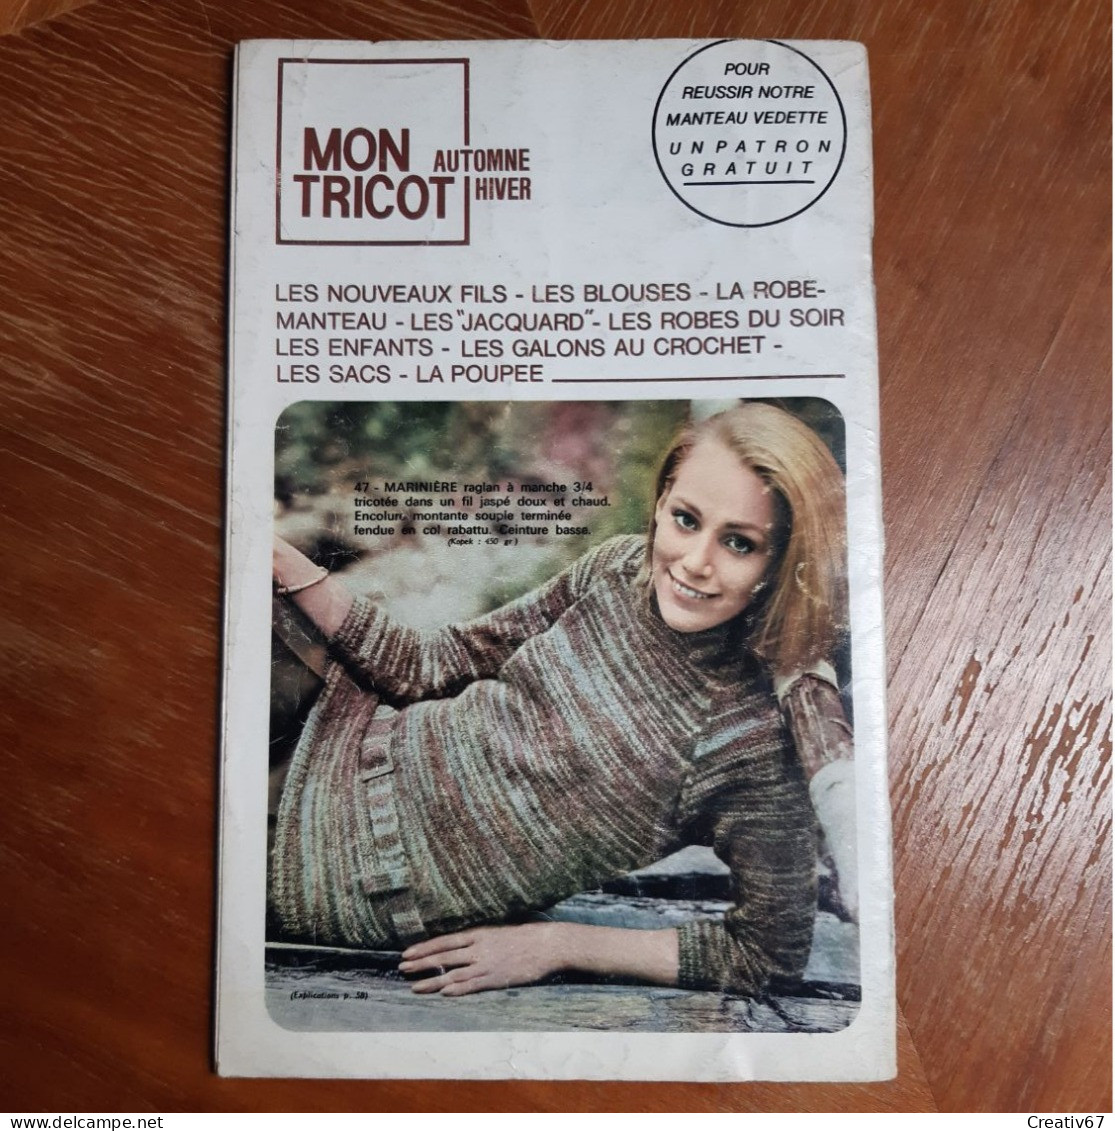 Mon Tricot 75 Edition De 1967 - Libri